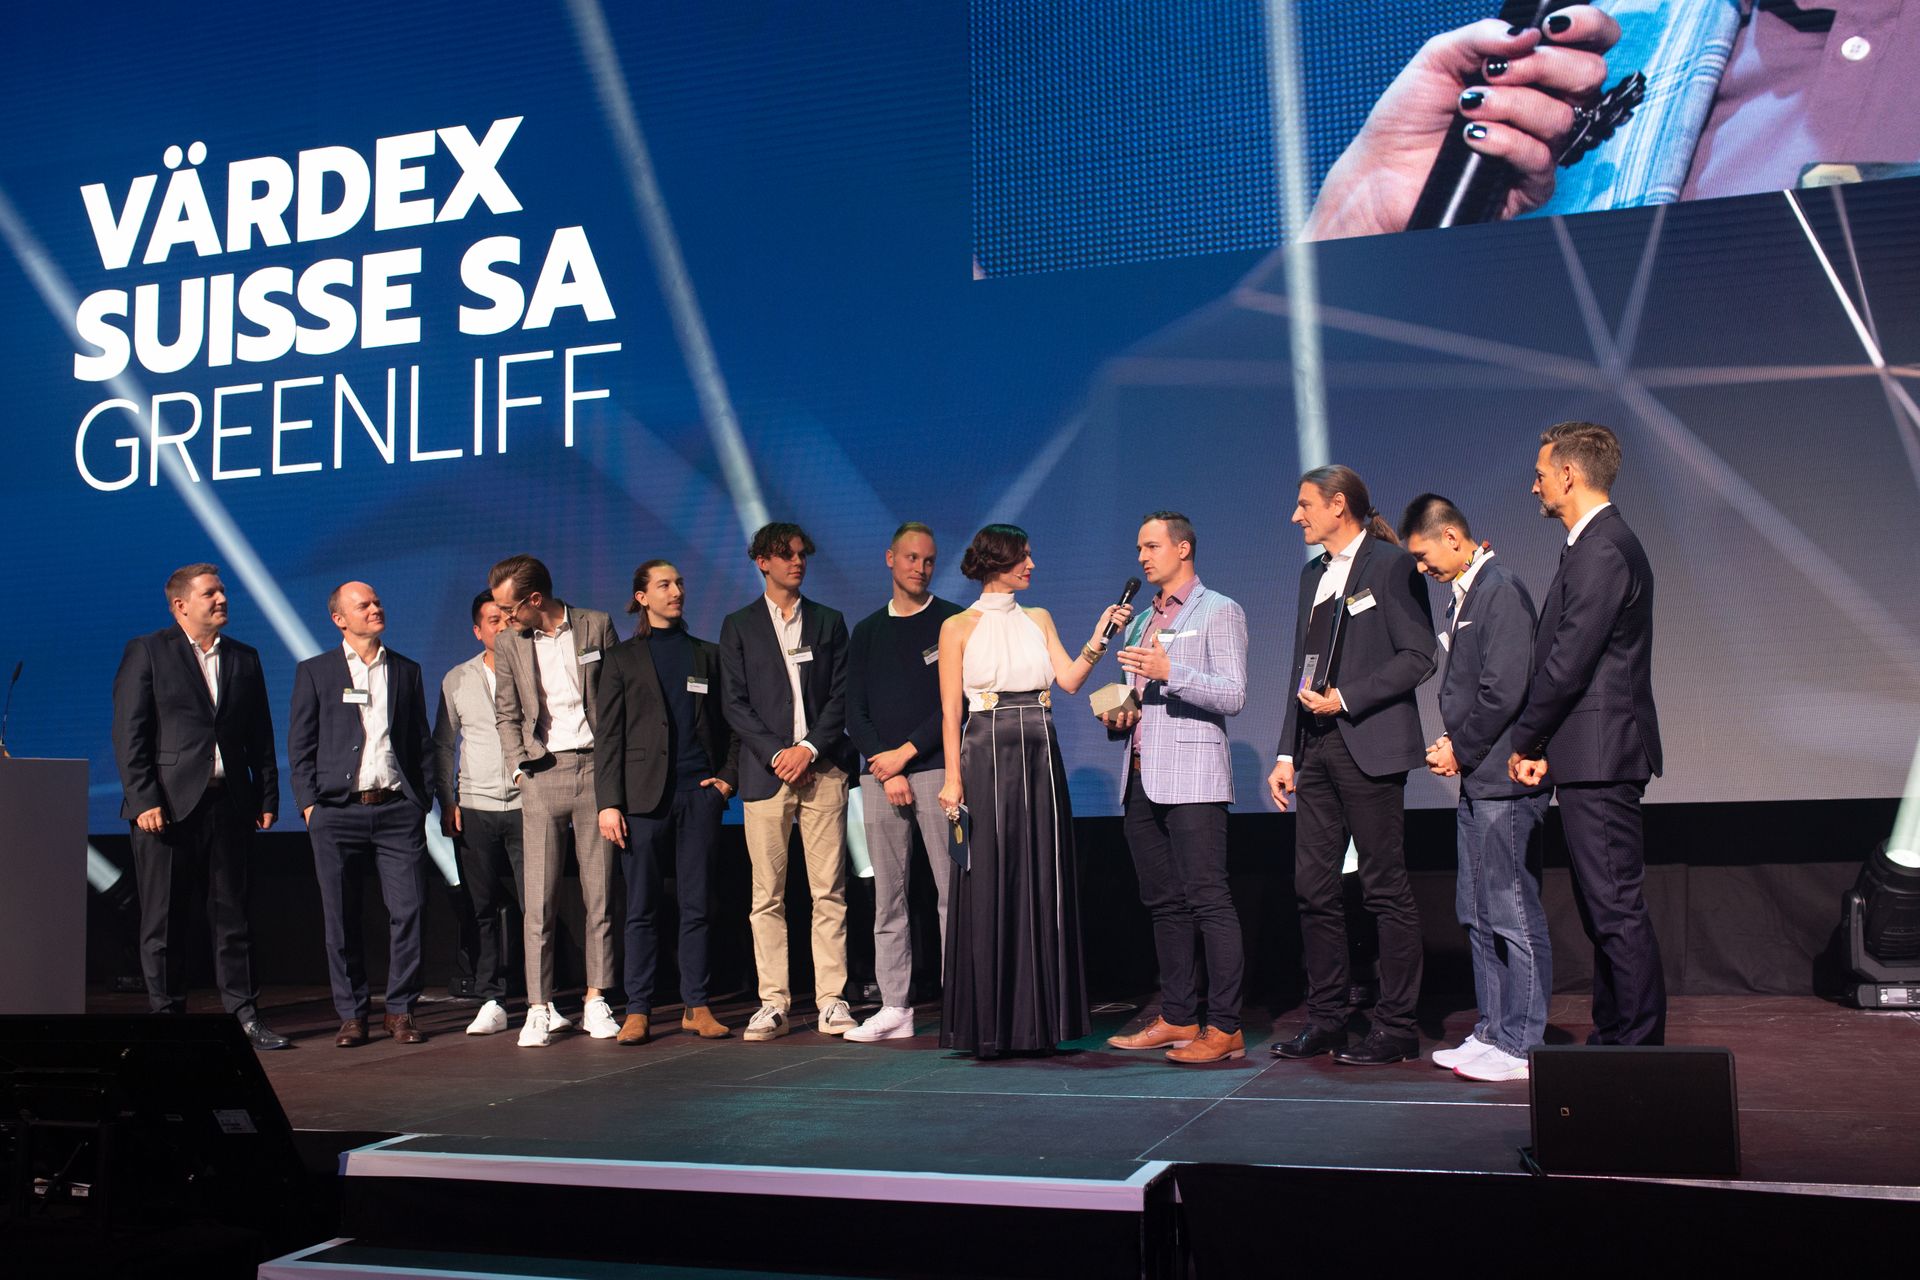 स्विट्जरलैंड के "डिजिटल इकोनॉमी अवार्ड्स" में "वार्डेक्स सुइस" और "ग्रीनलिफ़" कंपनियों को दो सर्वश्रेष्ठ "उच्चतम गुणवत्ता" पुरस्कार से सम्मानित किया गया।